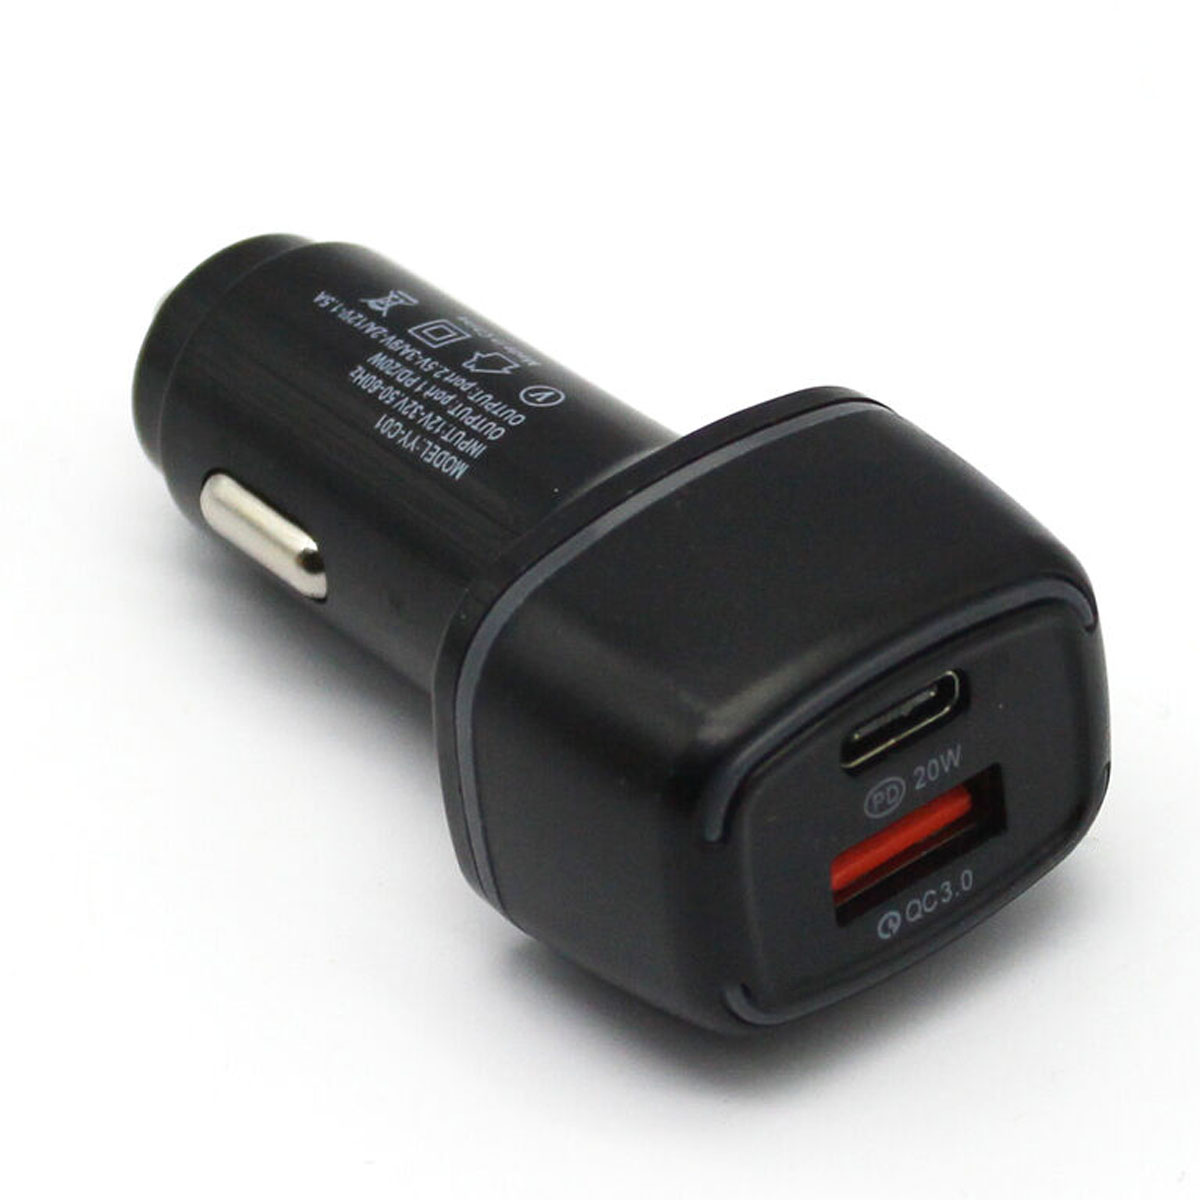 АЗУ (Автомобильное зарядное устройство) YY-C01, 20W, 1 USB Type C, 1 USB, QC3.0, цвет черный